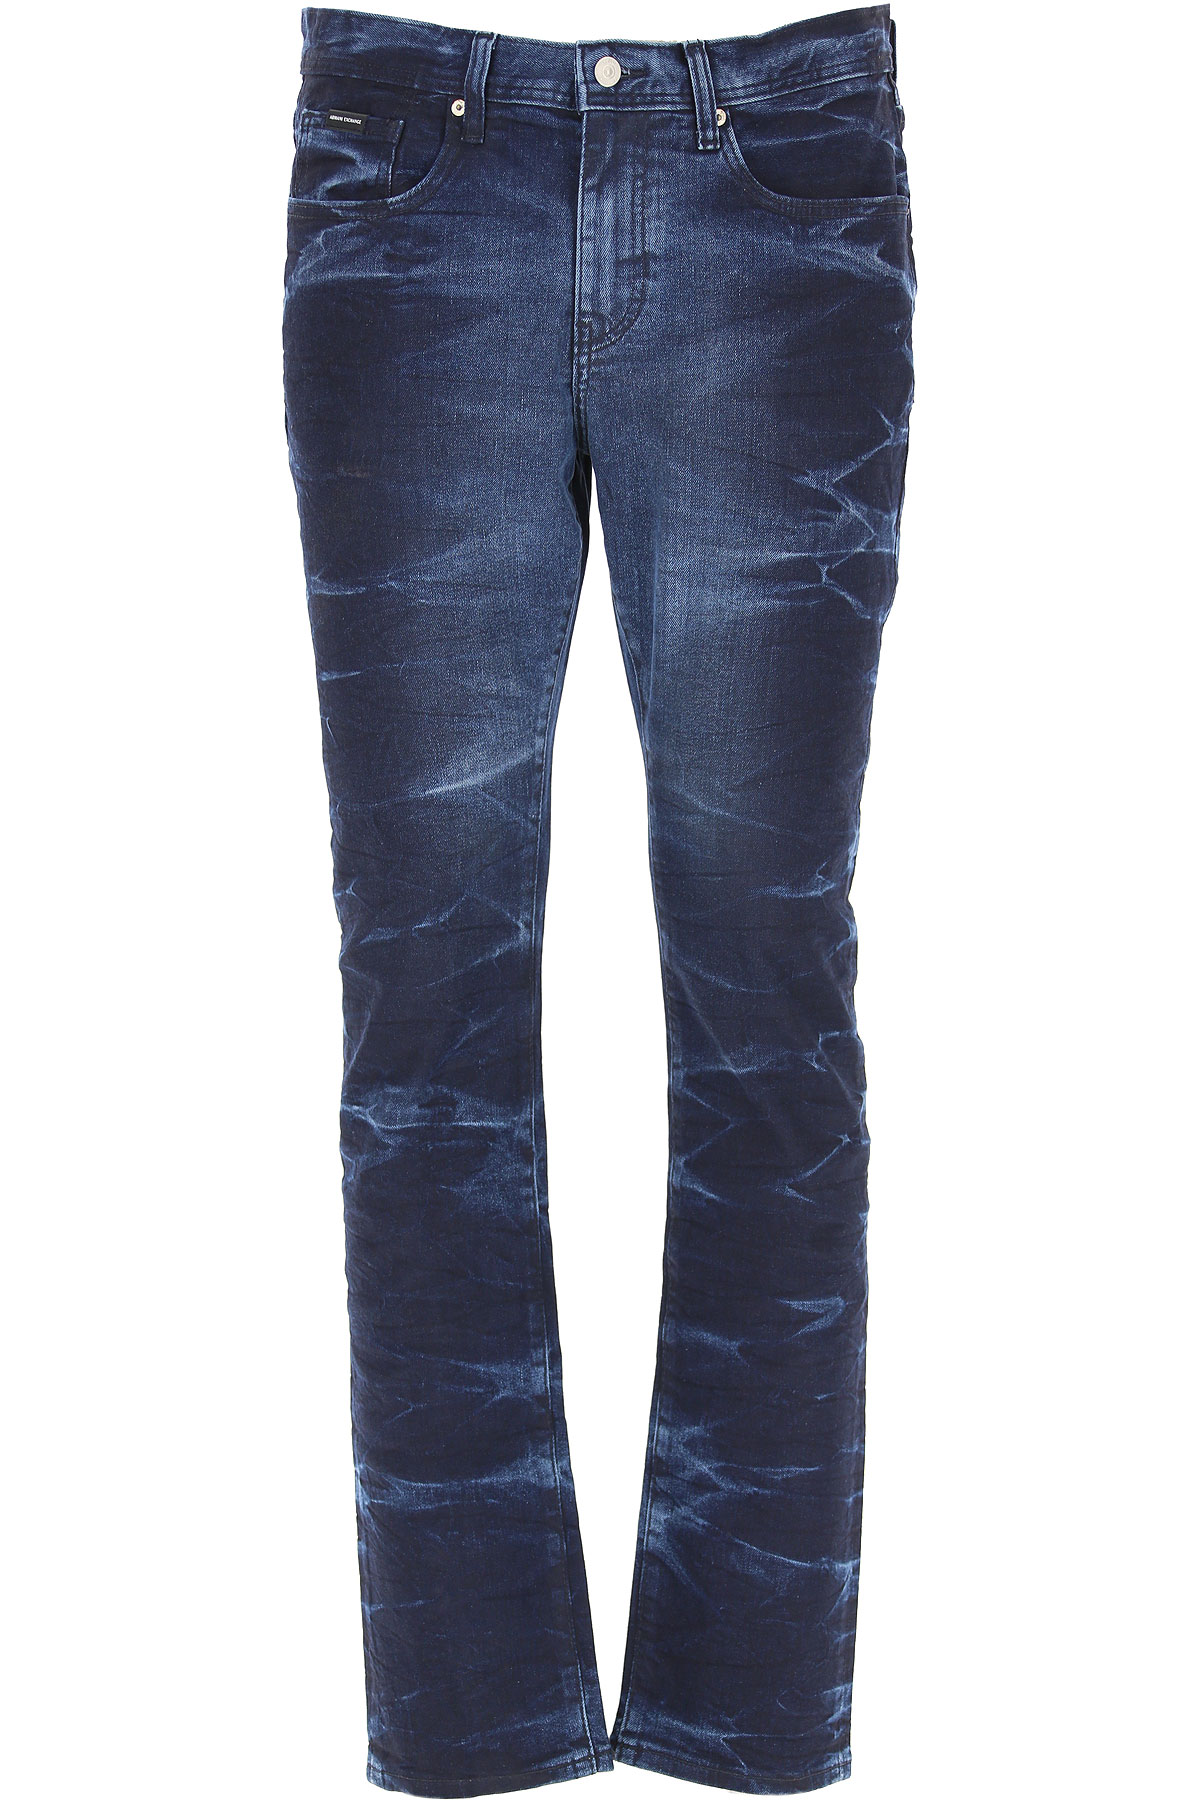 Emporio Armani Jeans, Bluejeans, Denim Jeans für Herren Günstig im Sale, Indigo Blau Denim, Baumwolle, 2017, 45 46 47 48 49 50 52